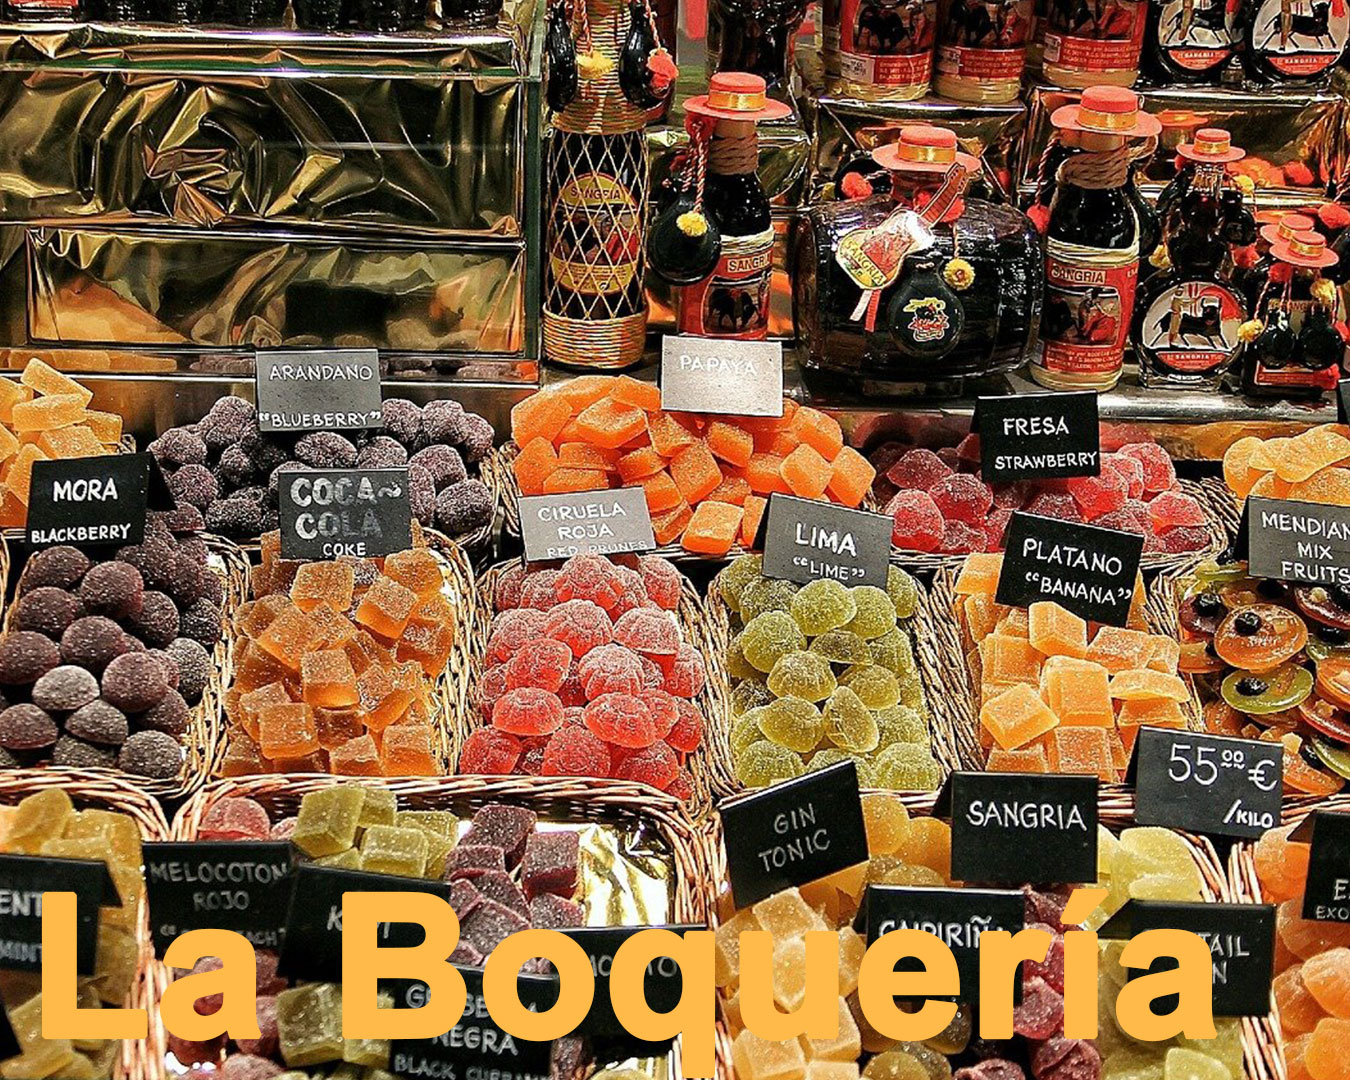 barcelona La Boqueria Market